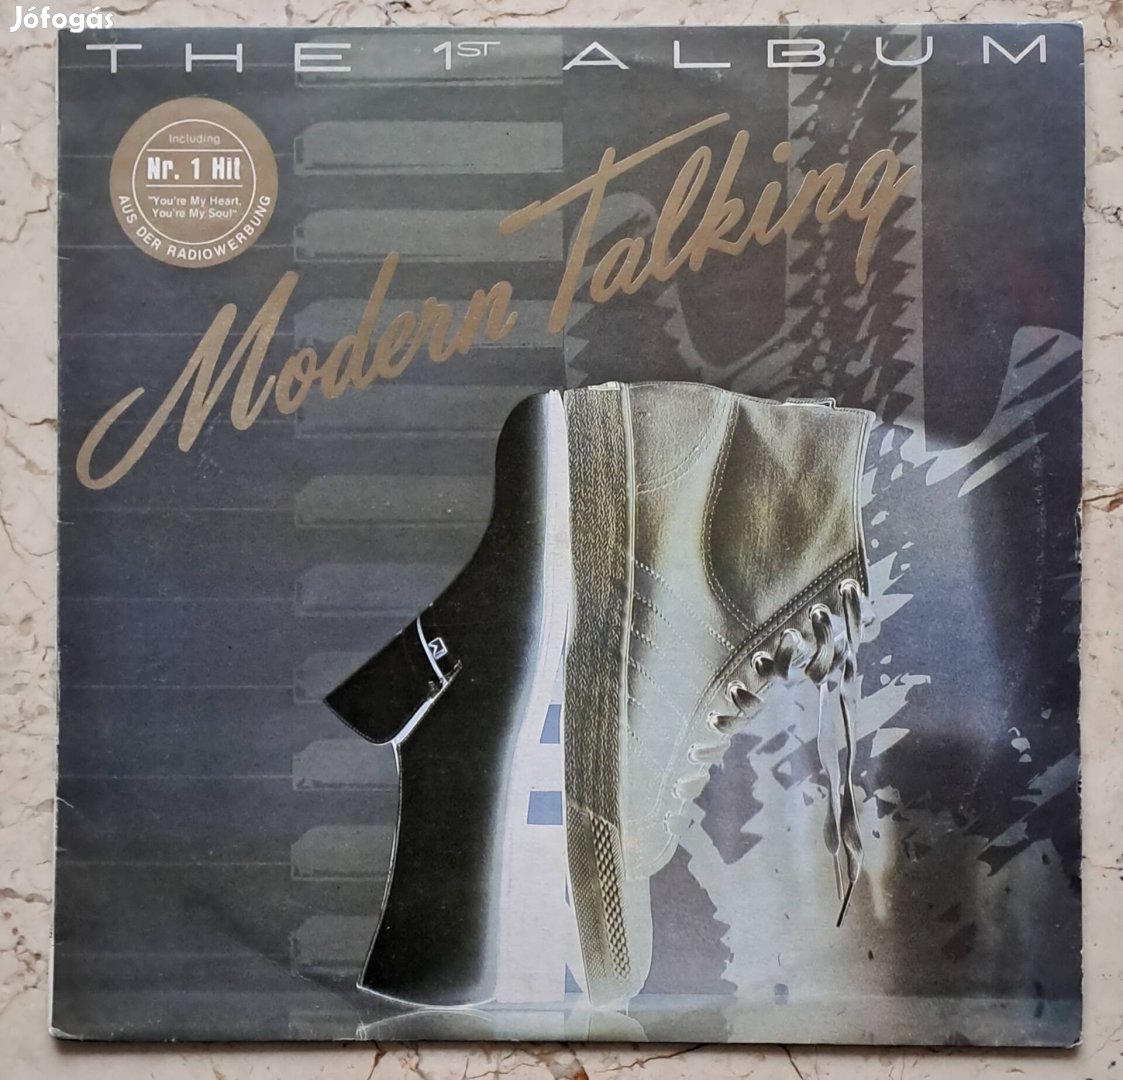 Modern Talking : First album című bakelit lemeze 